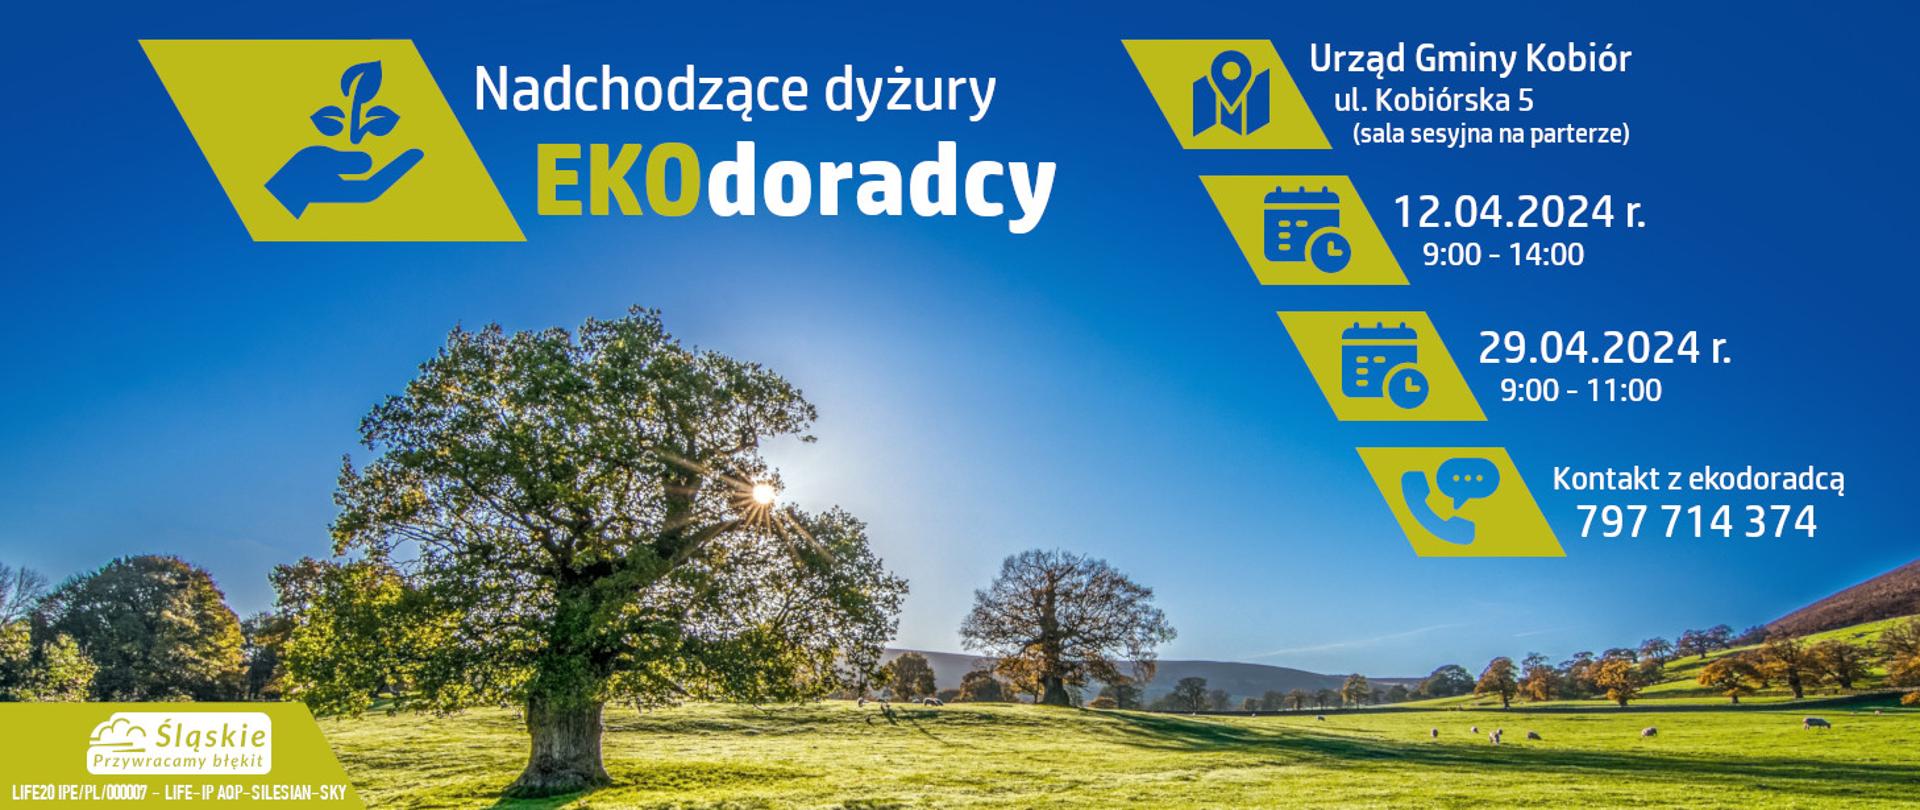 Baner informujący o dyżurach EkoDoradcy w tle słoneczne niebo i drzewa na zielonej trawie